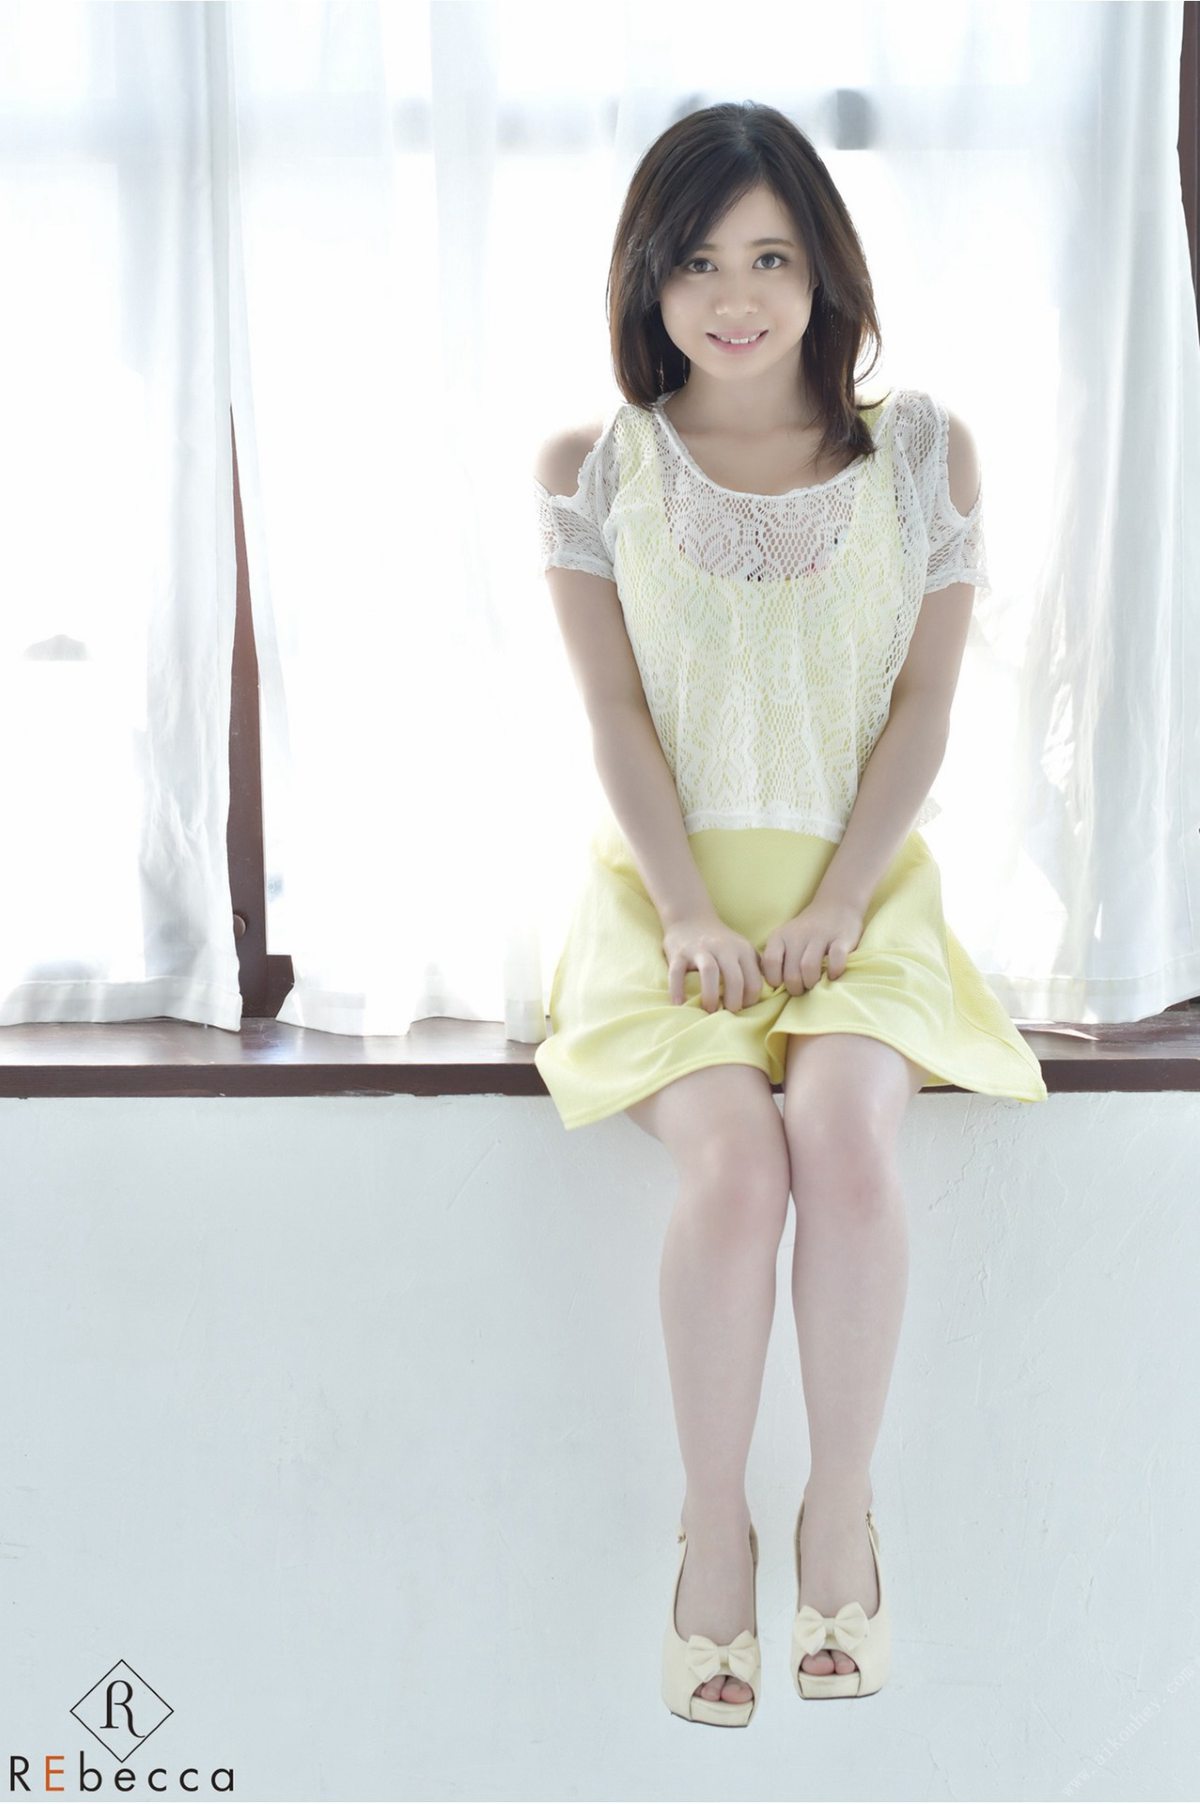 Rebecca Aimi Yoshikawa 吉川あいみ Aimi2 Smile reunion 笑顔の再会 2019 02 01 0002 1069130910.jpg